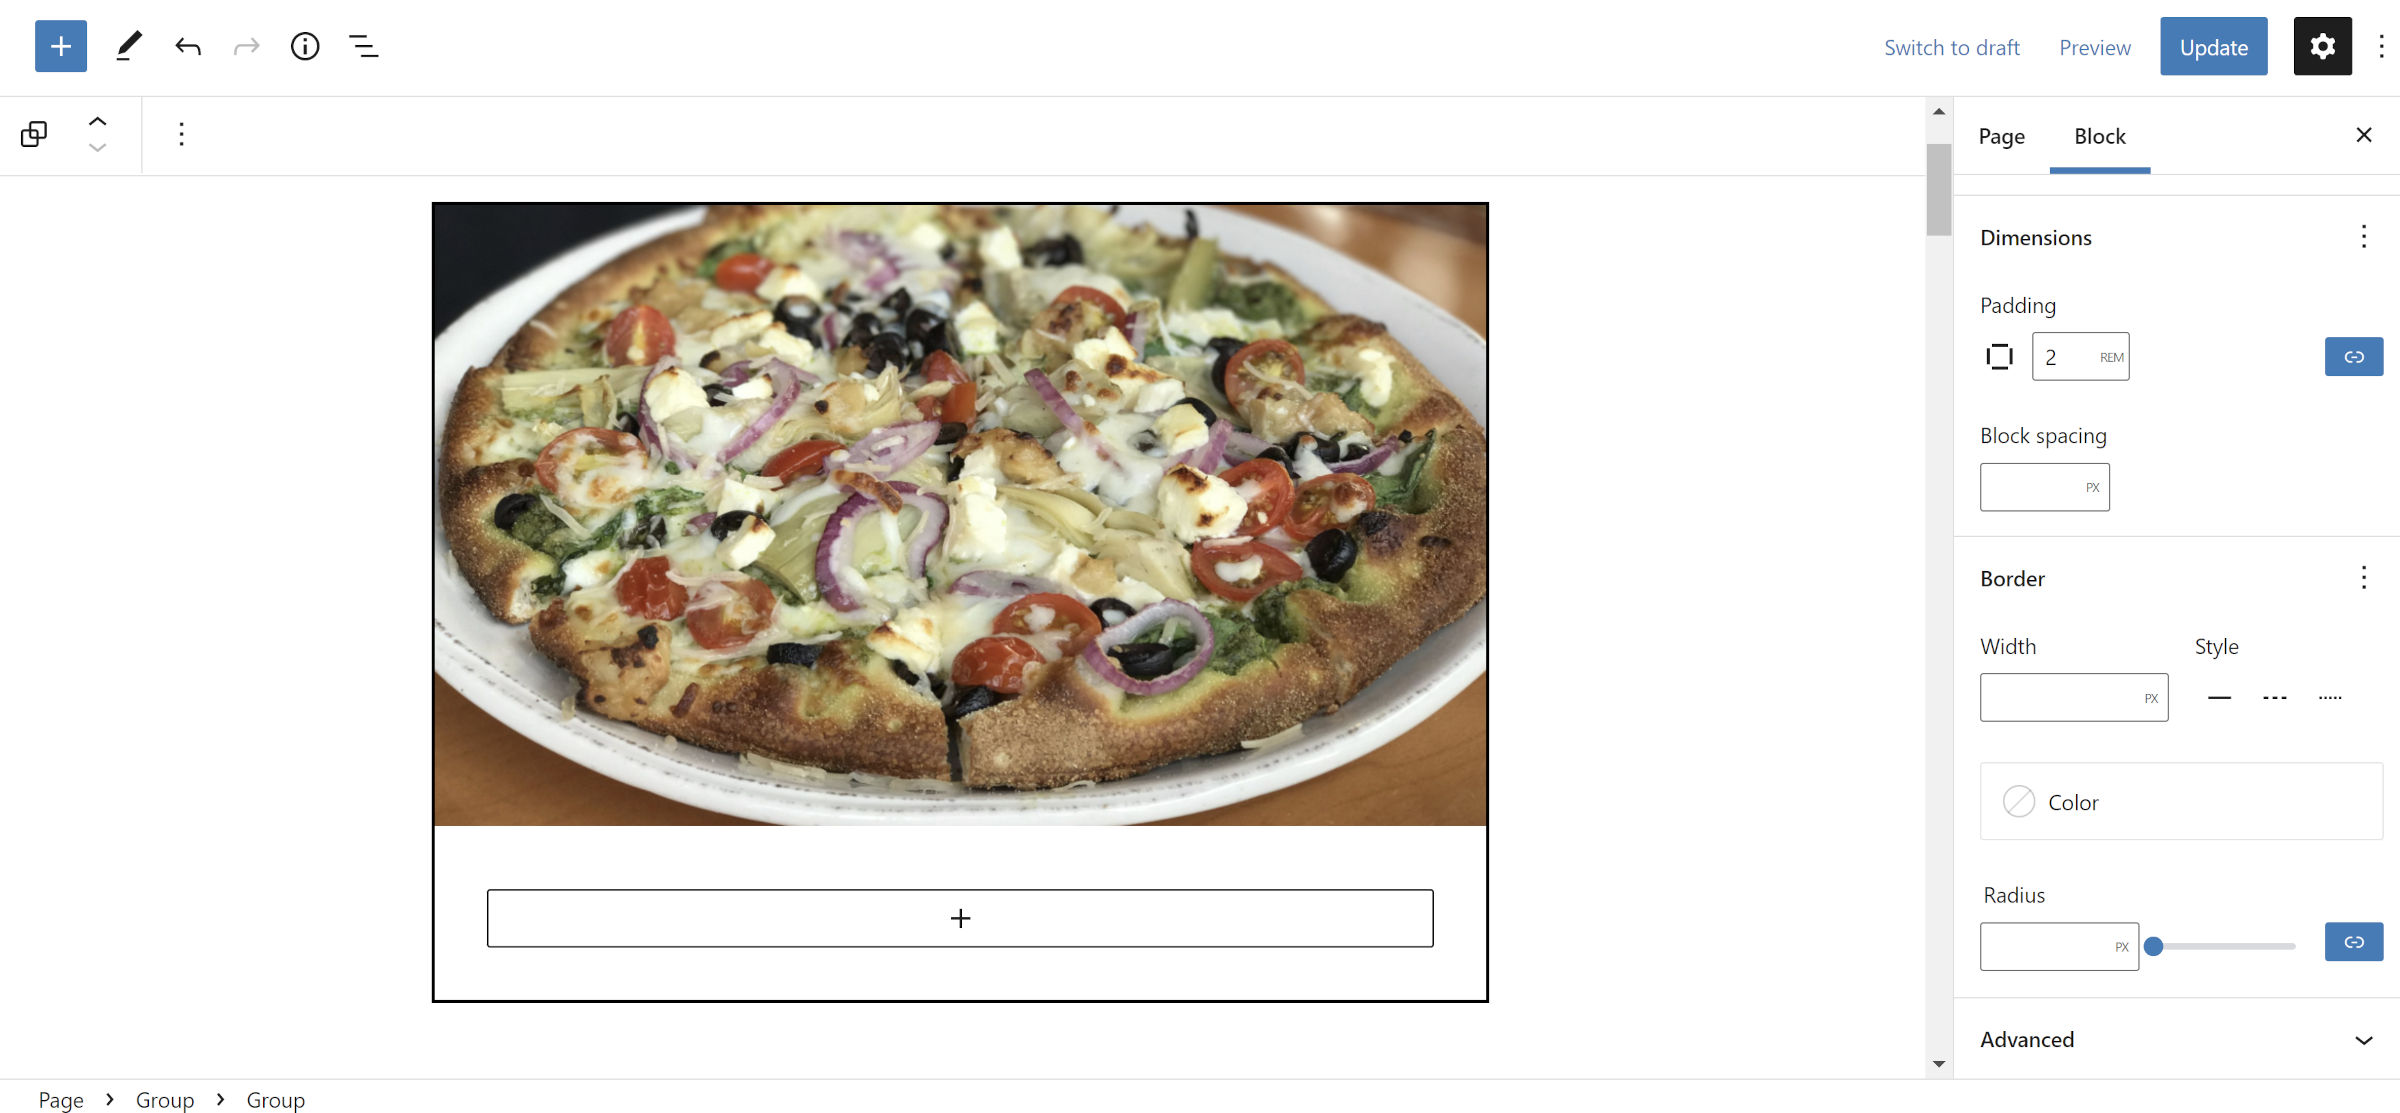 Eine Rezeptkarte im Blockeditor. Oben ist ein Bild von einer Pizza.  Darunter befindet sich ein ausgefüllter Gruppenblock.